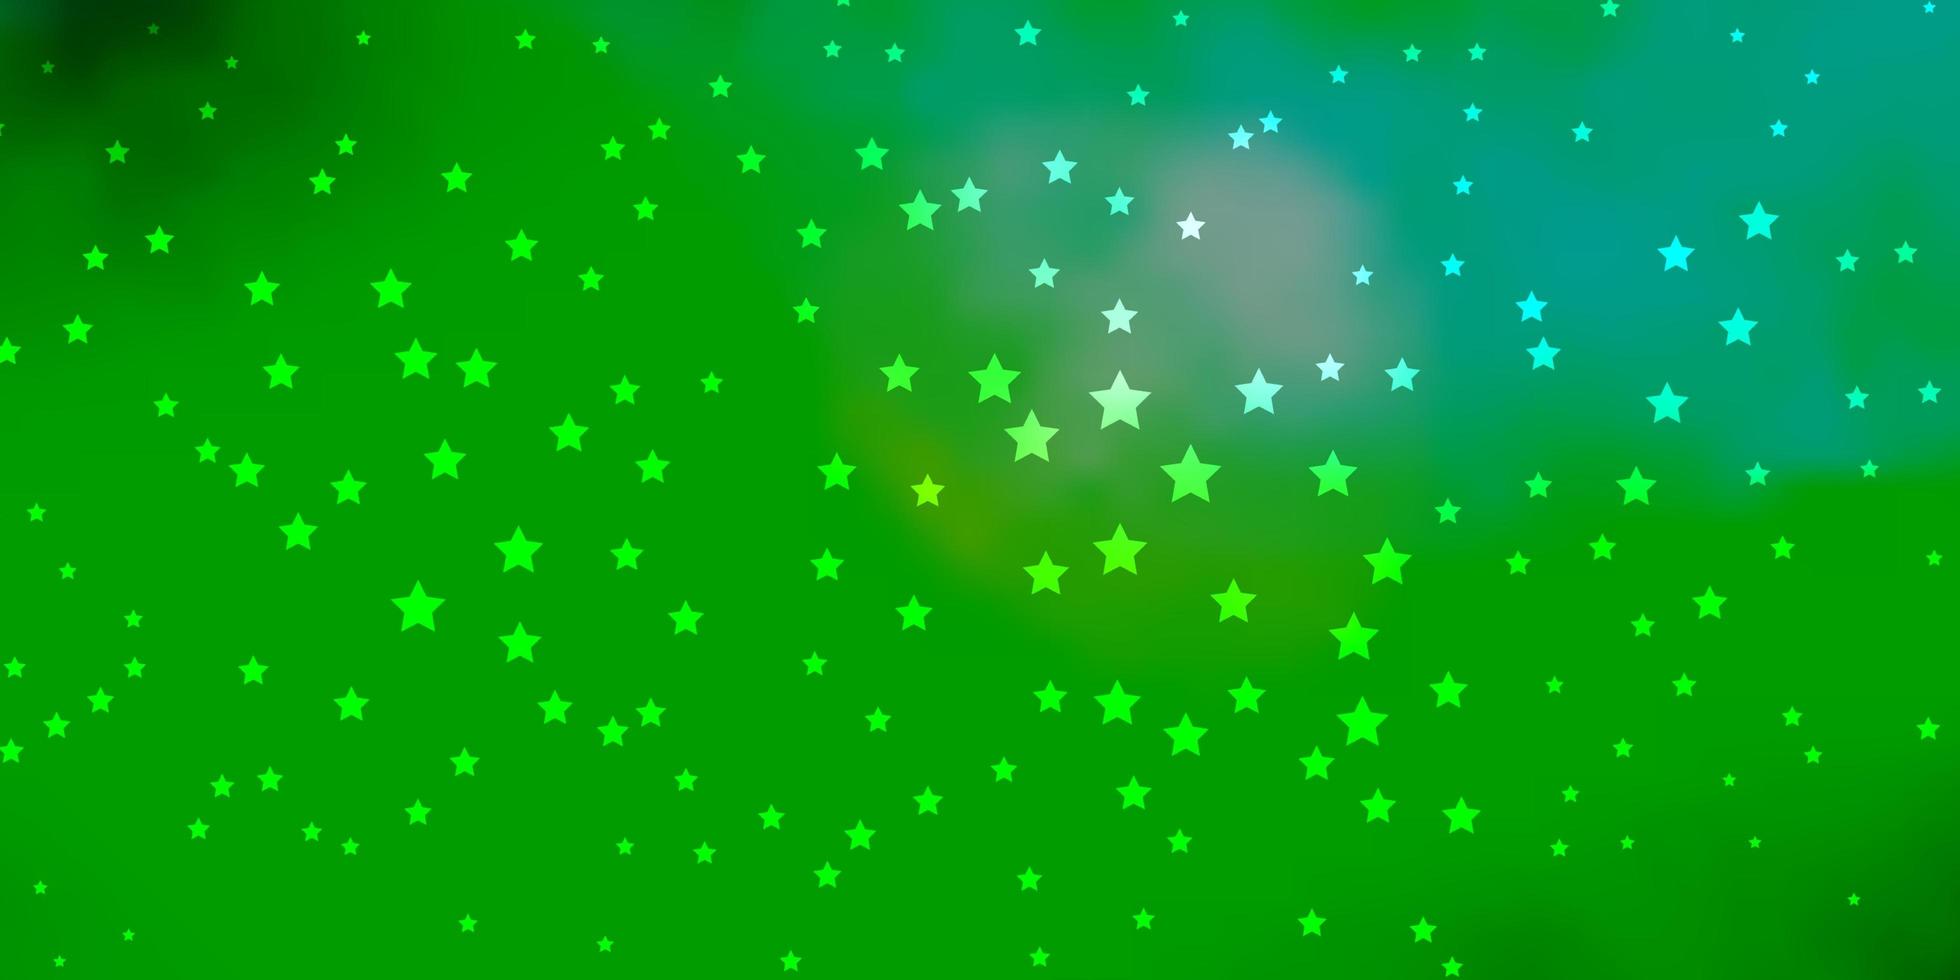 Plantilla de vector azul oscuro, verde con estrellas de neón. Ilustración colorida brillante con estrellas grandes y pequeñas. mejor diseño para su anuncio, cartel, banner.